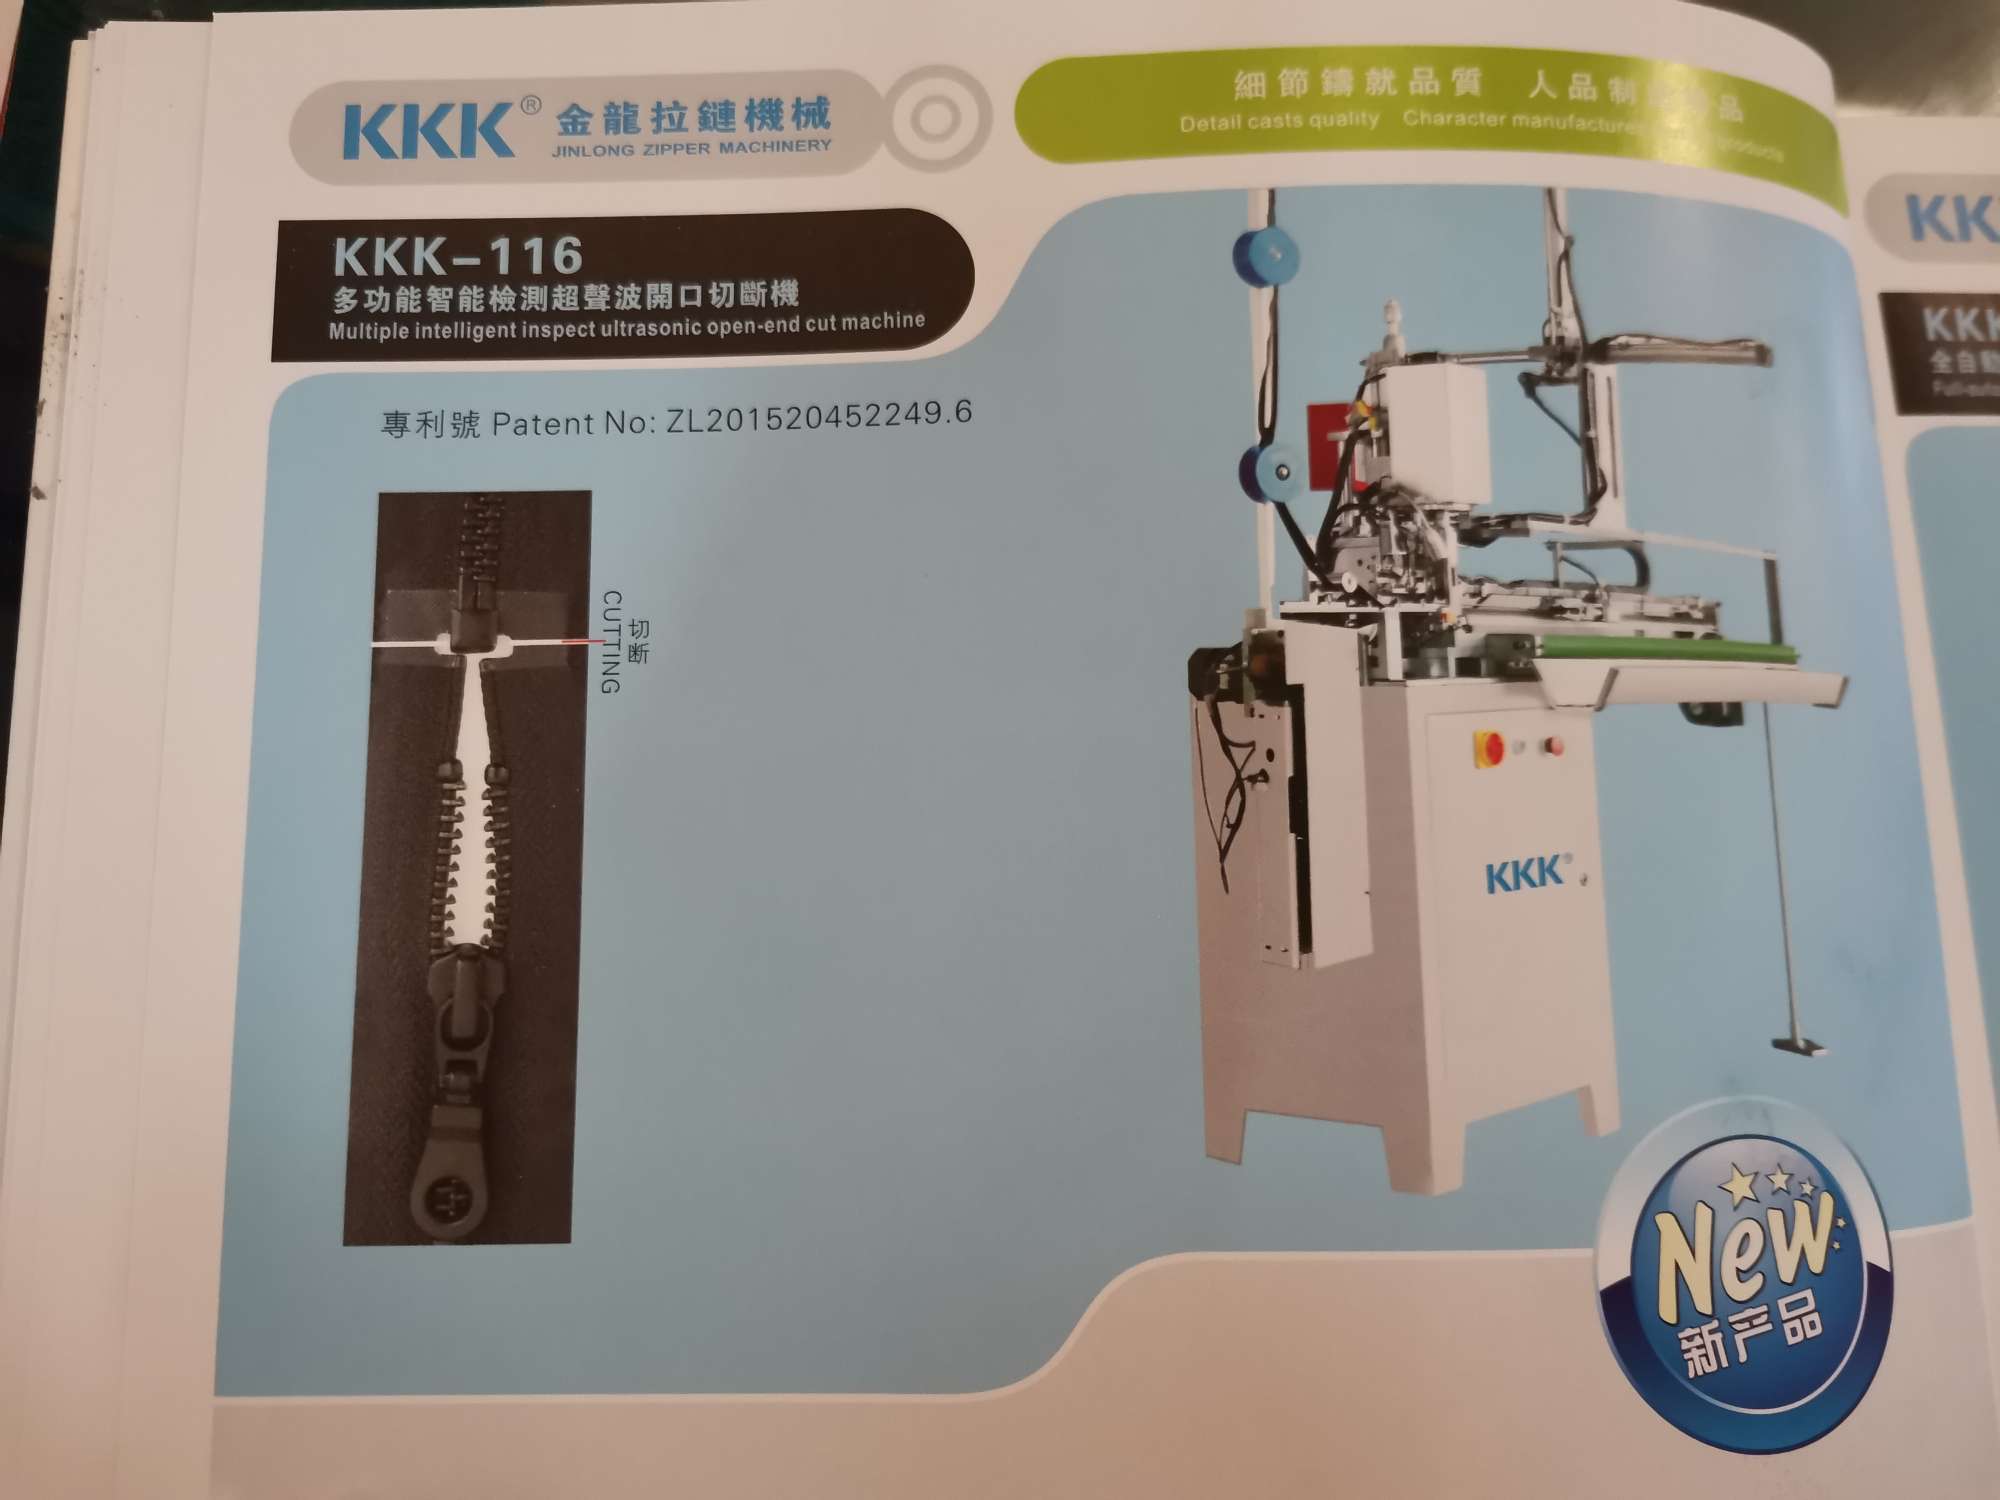 KKK—116
多功能检测超声波闭口切断机图